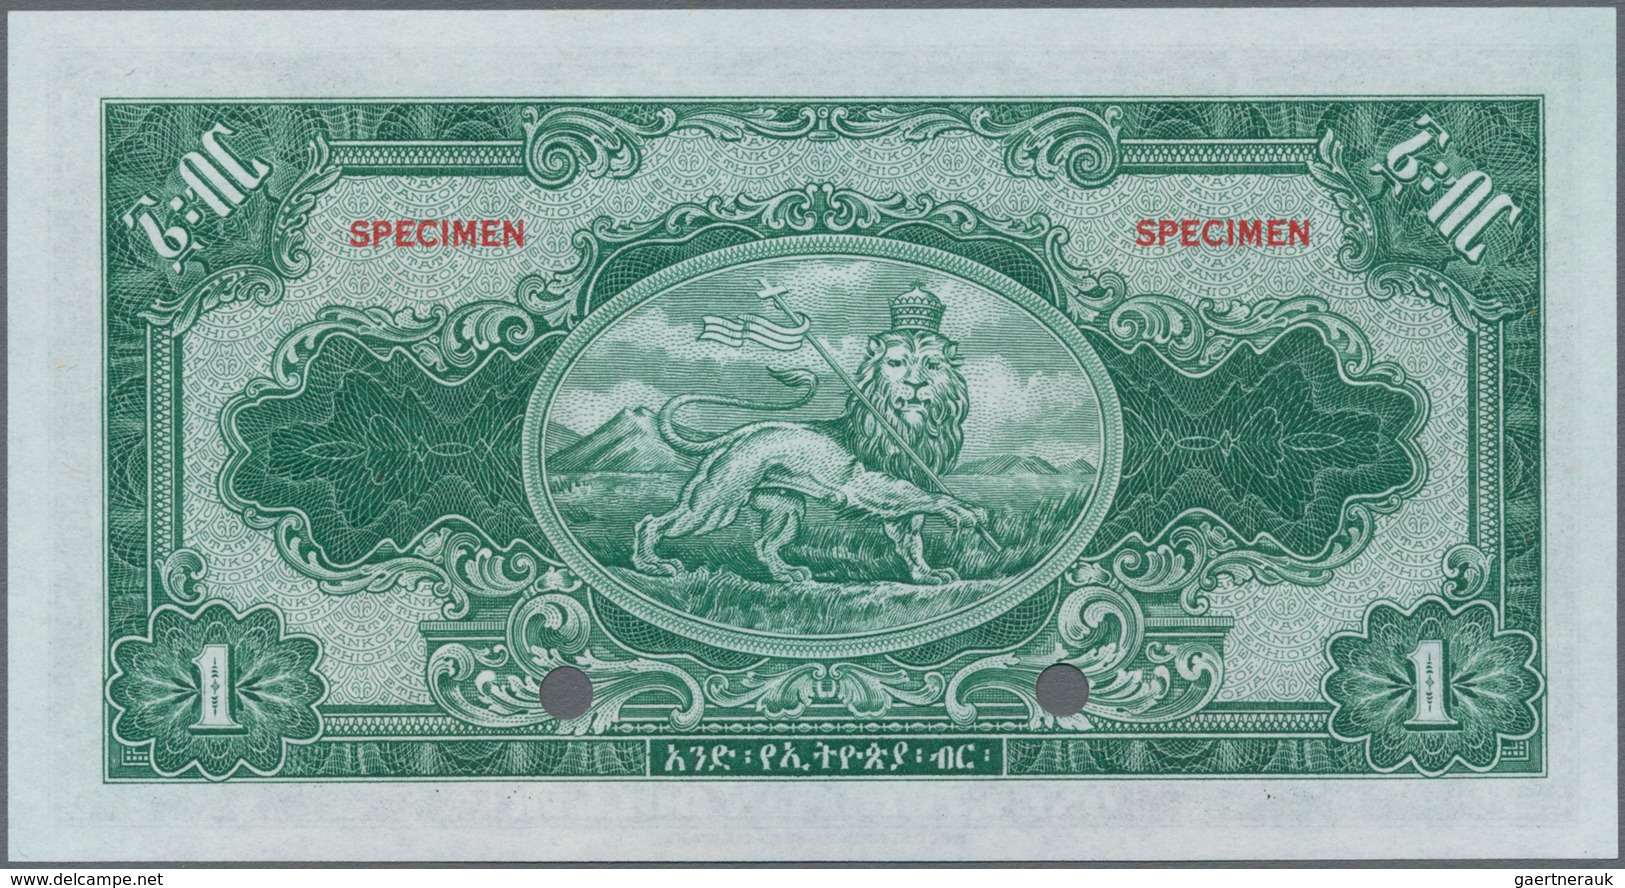 Ethiopia / Äthiopien: The State Bank Of Ethiopia 1 Dollar ND(1945) SPECIMEN With Signature Rozell, P - Aethiopien